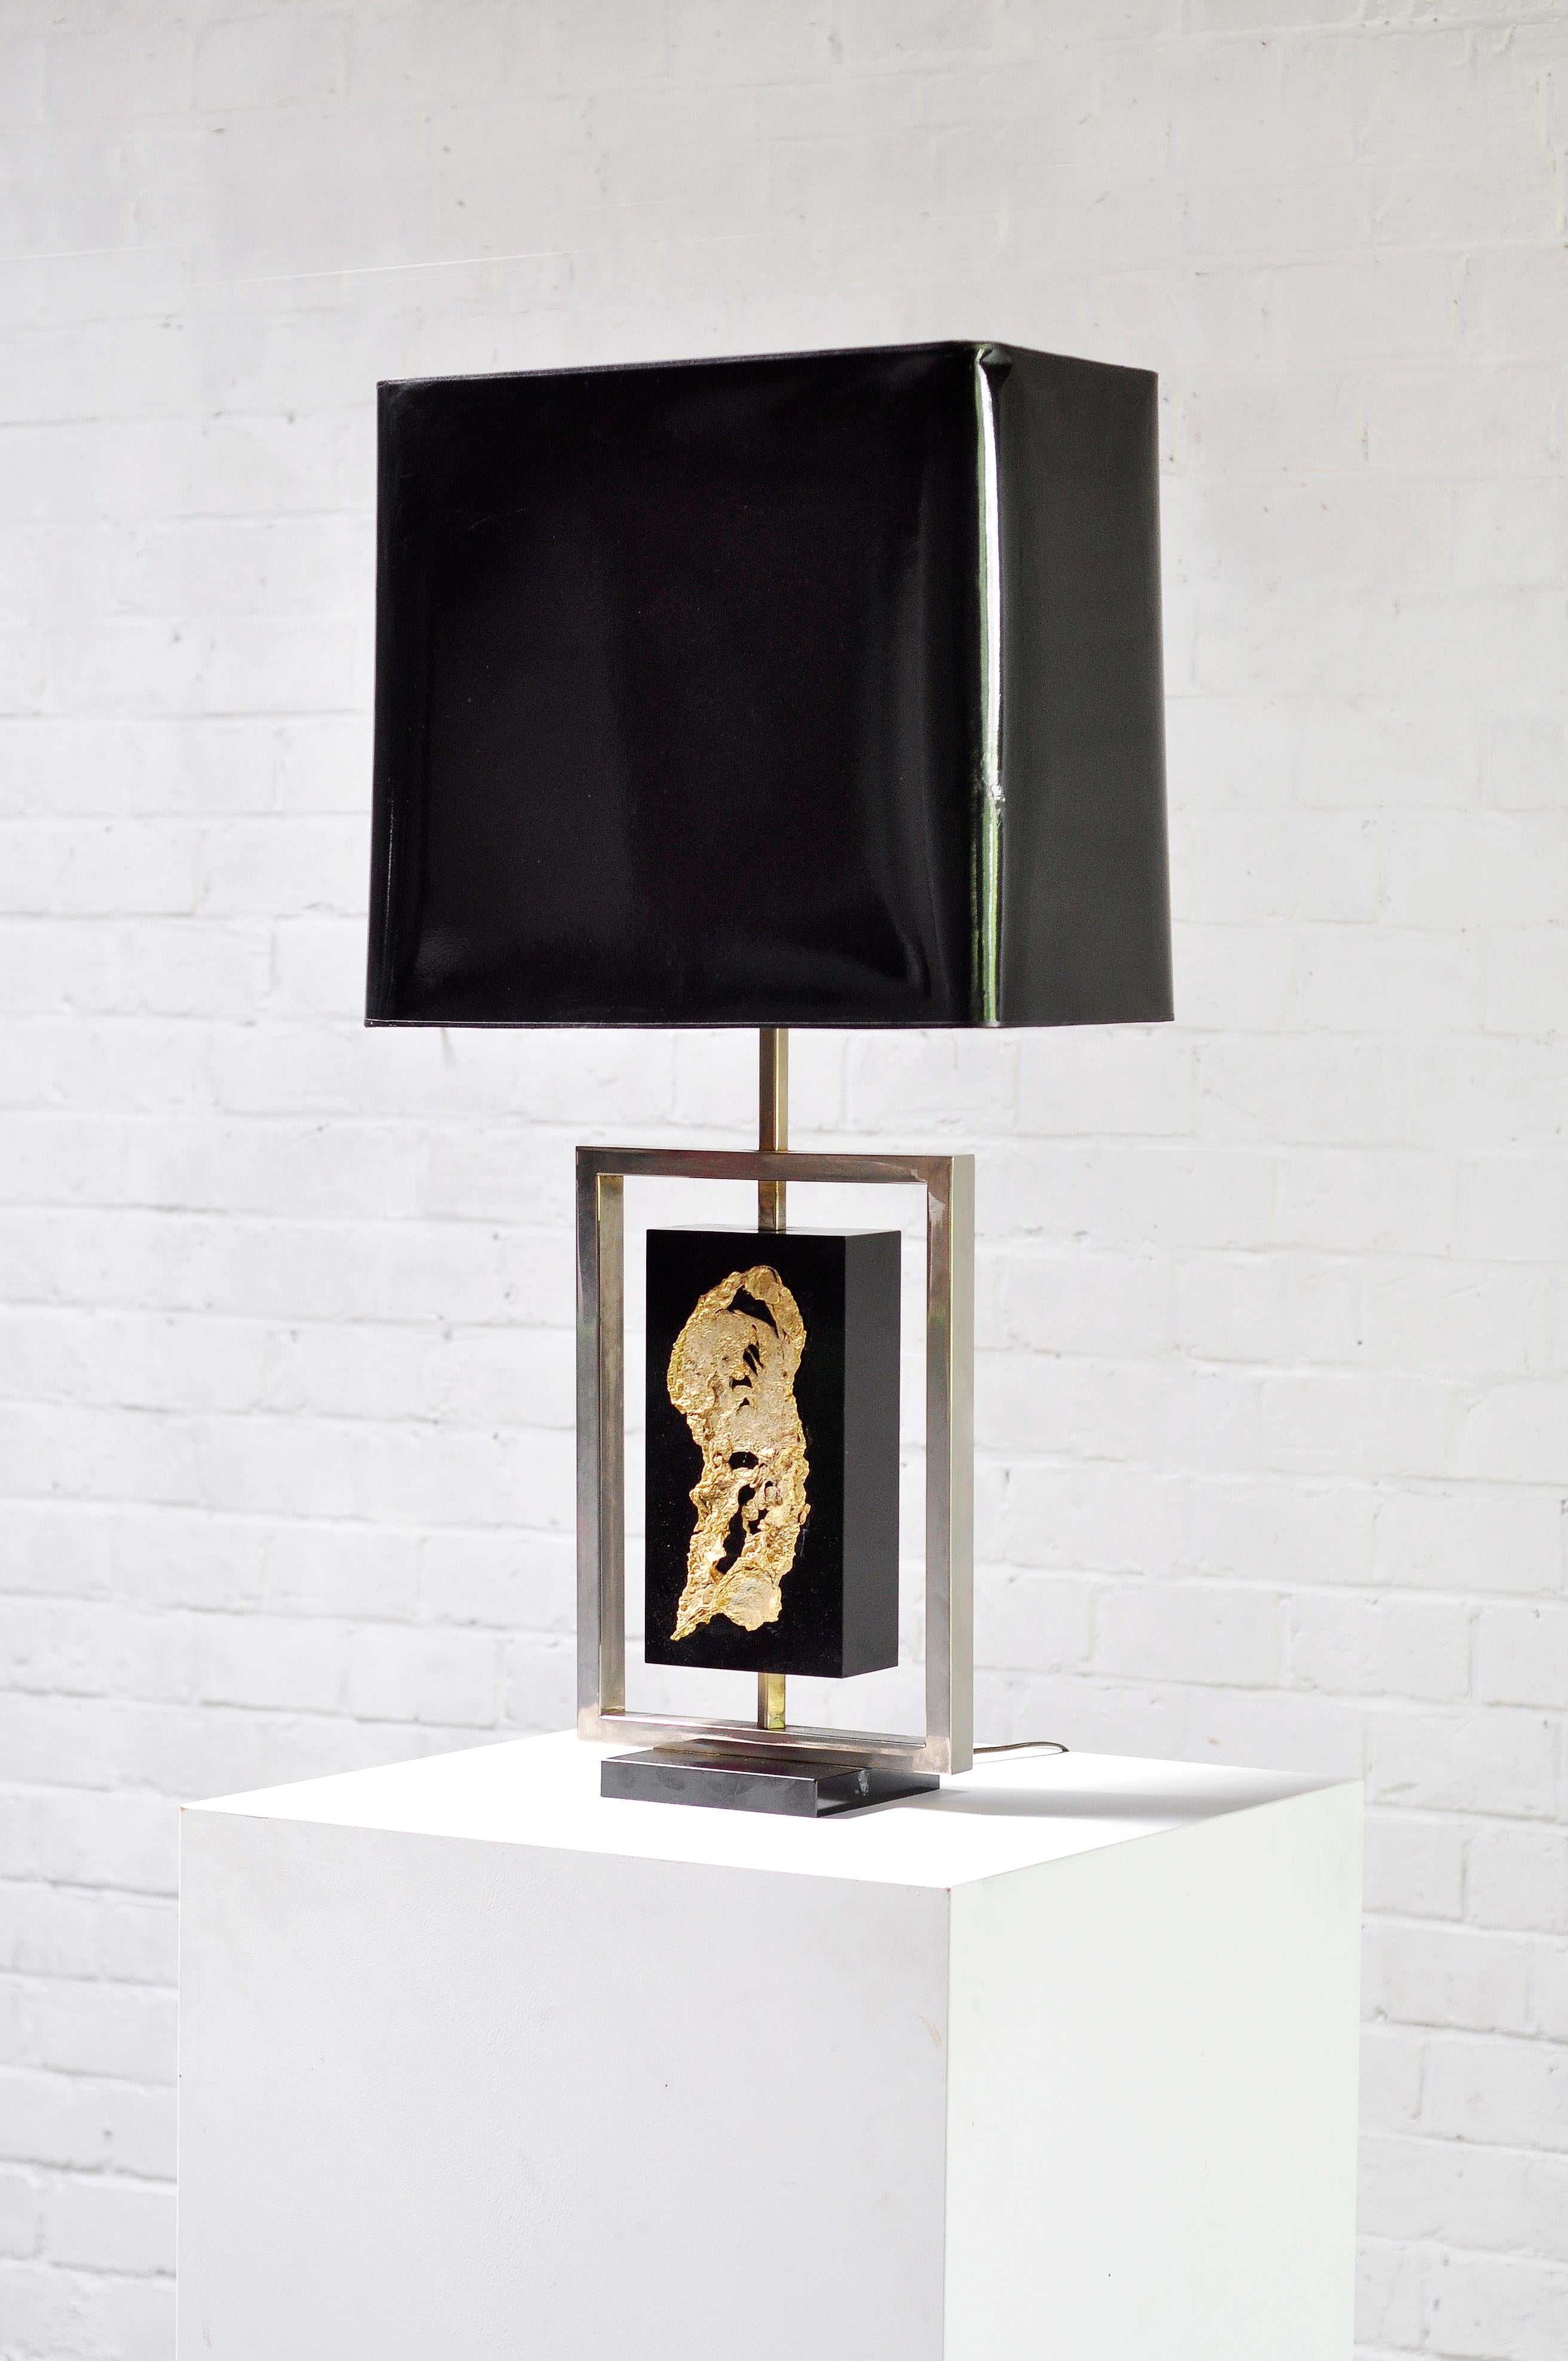 Une grande lampe de table caractéristique conçue par Philippe Cheverny, artiste et designer français à Paris dans les années 1970. Cette lampe présente une base en bois stratifié noir avec un cadre métallique et une décoration moderniste en métal